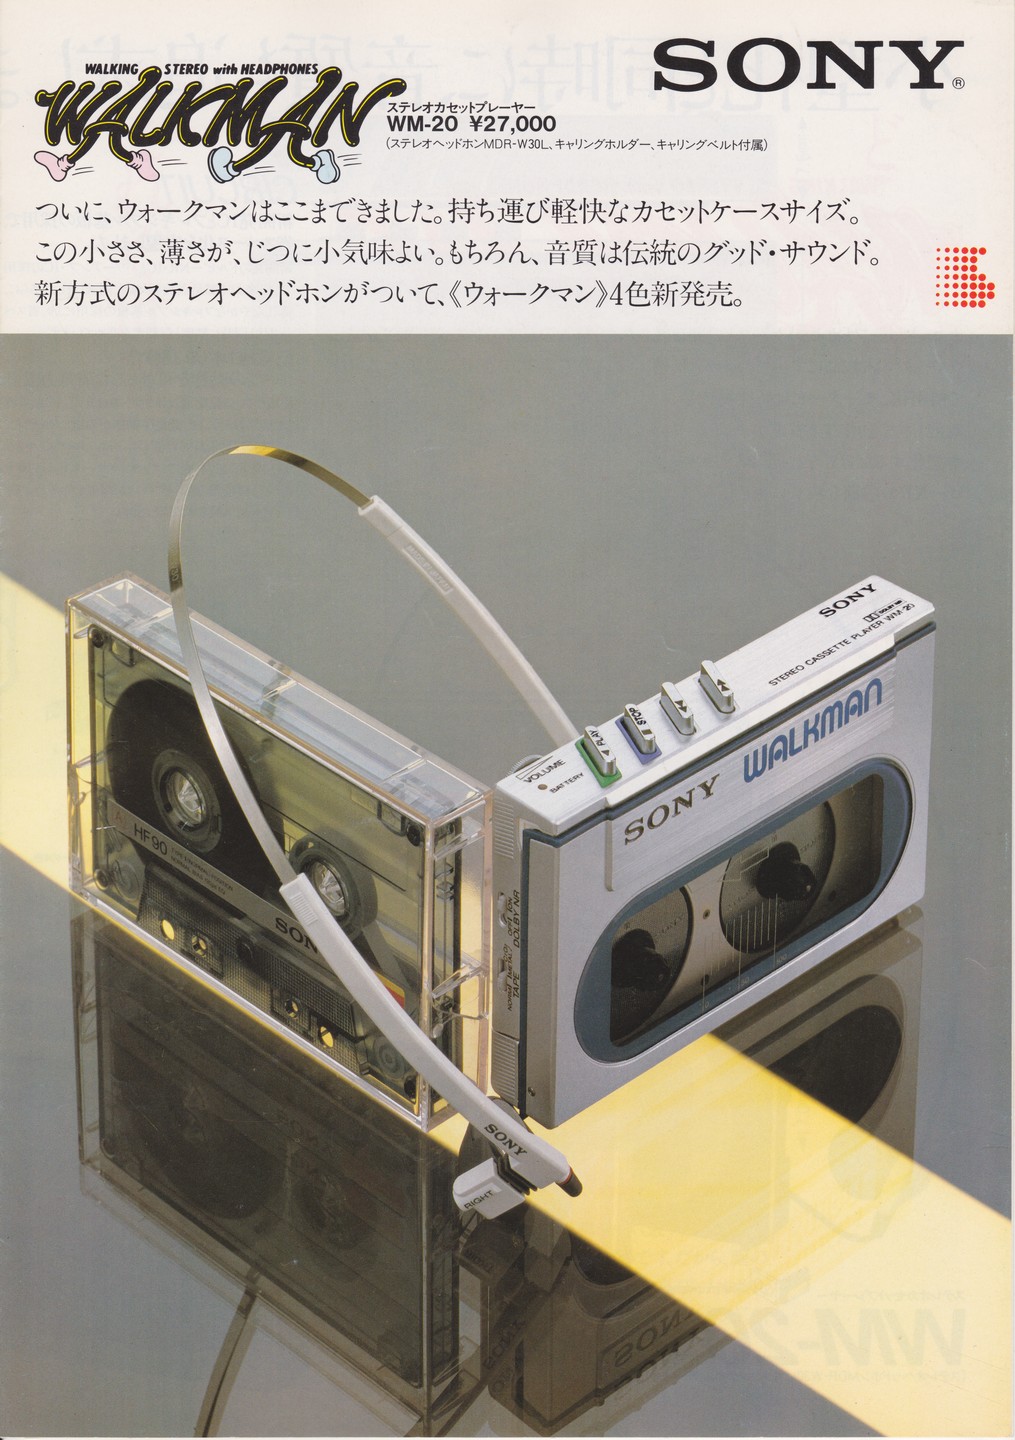 Sony Walkman WM-20